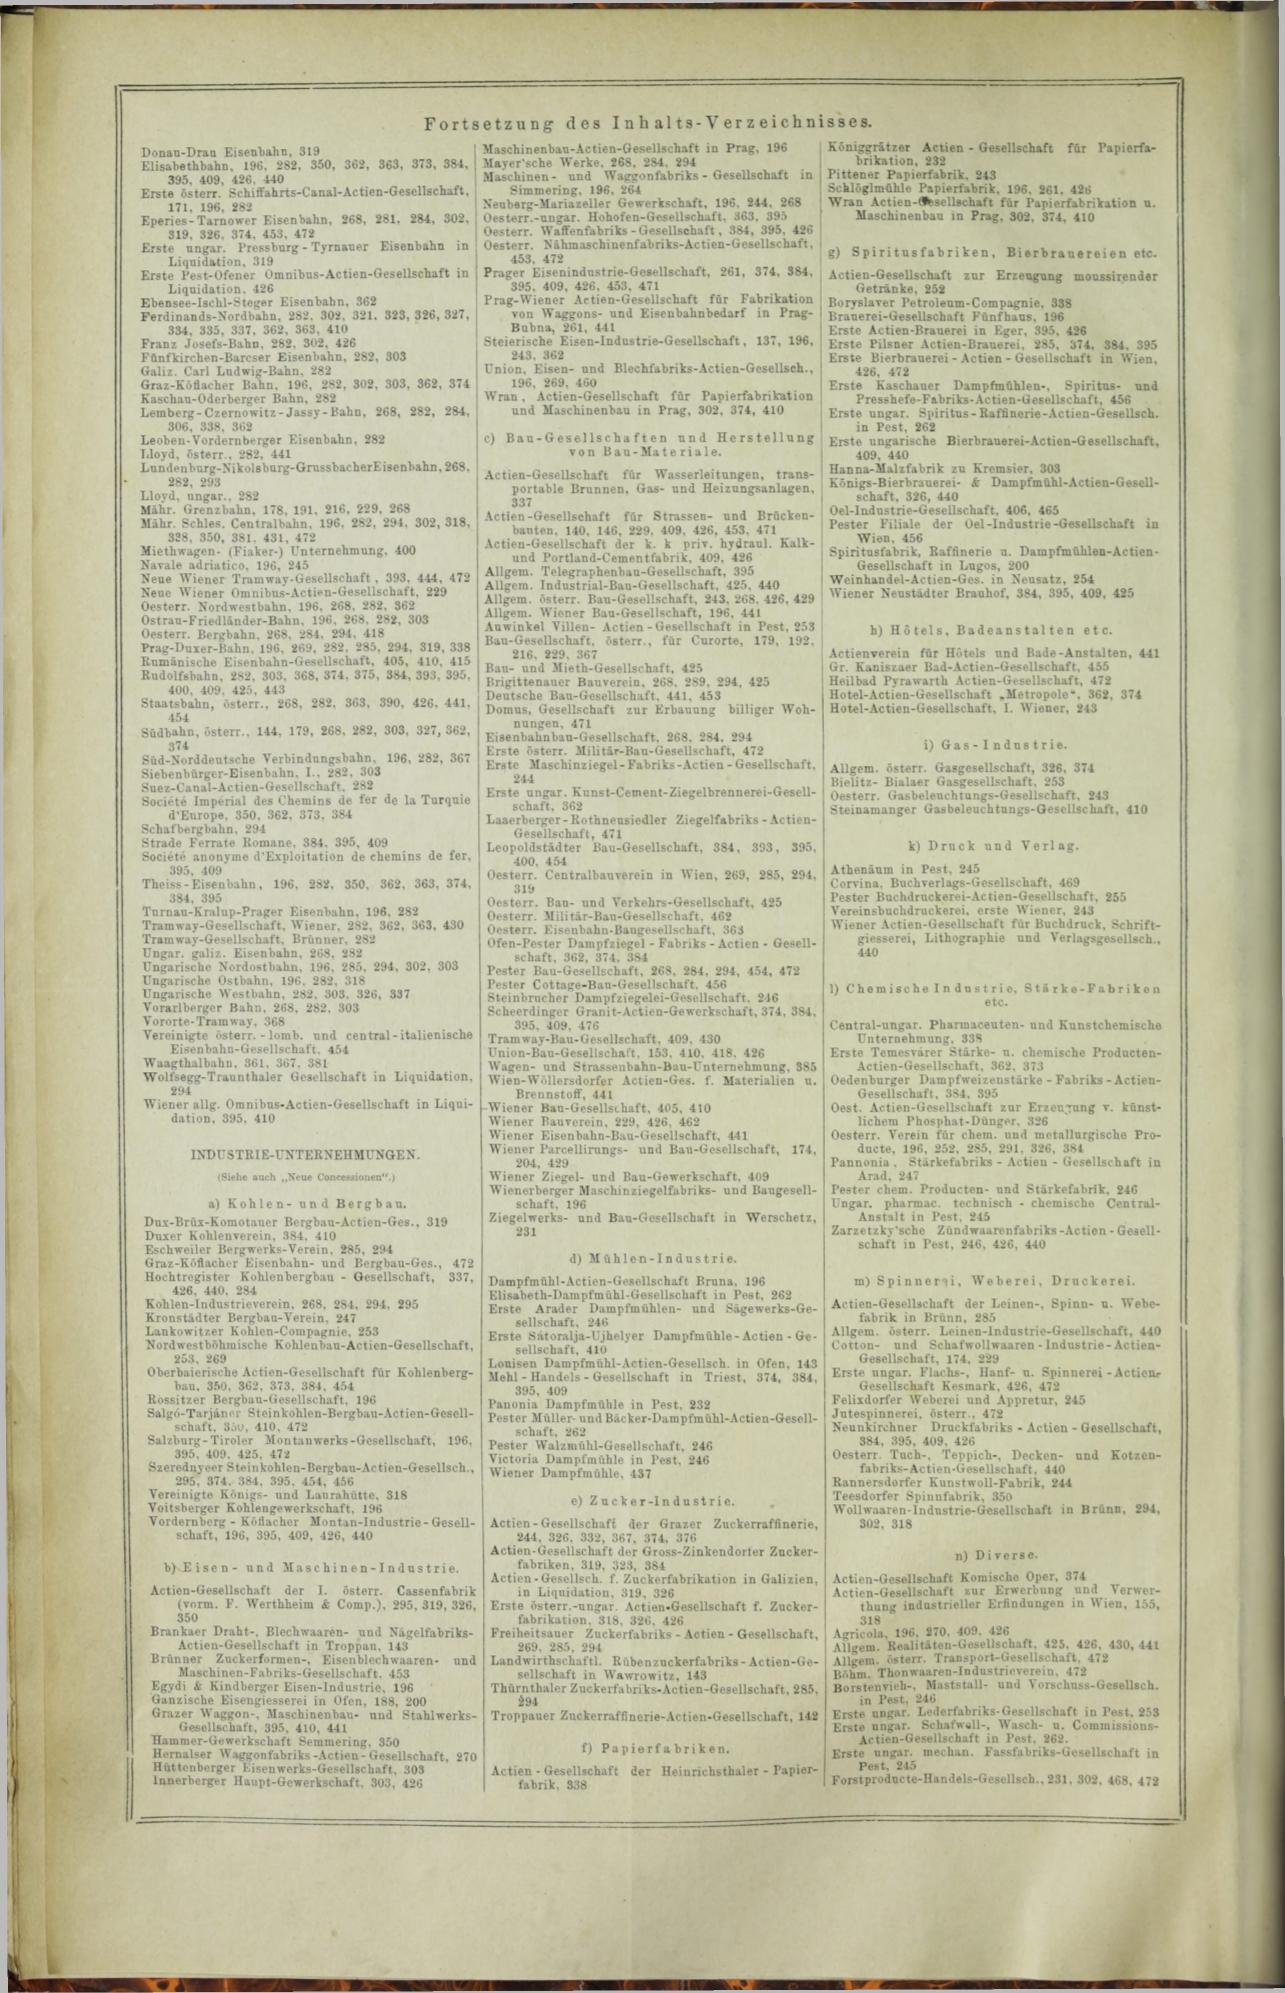 Der Tresor 24.07.1872 - Page 16